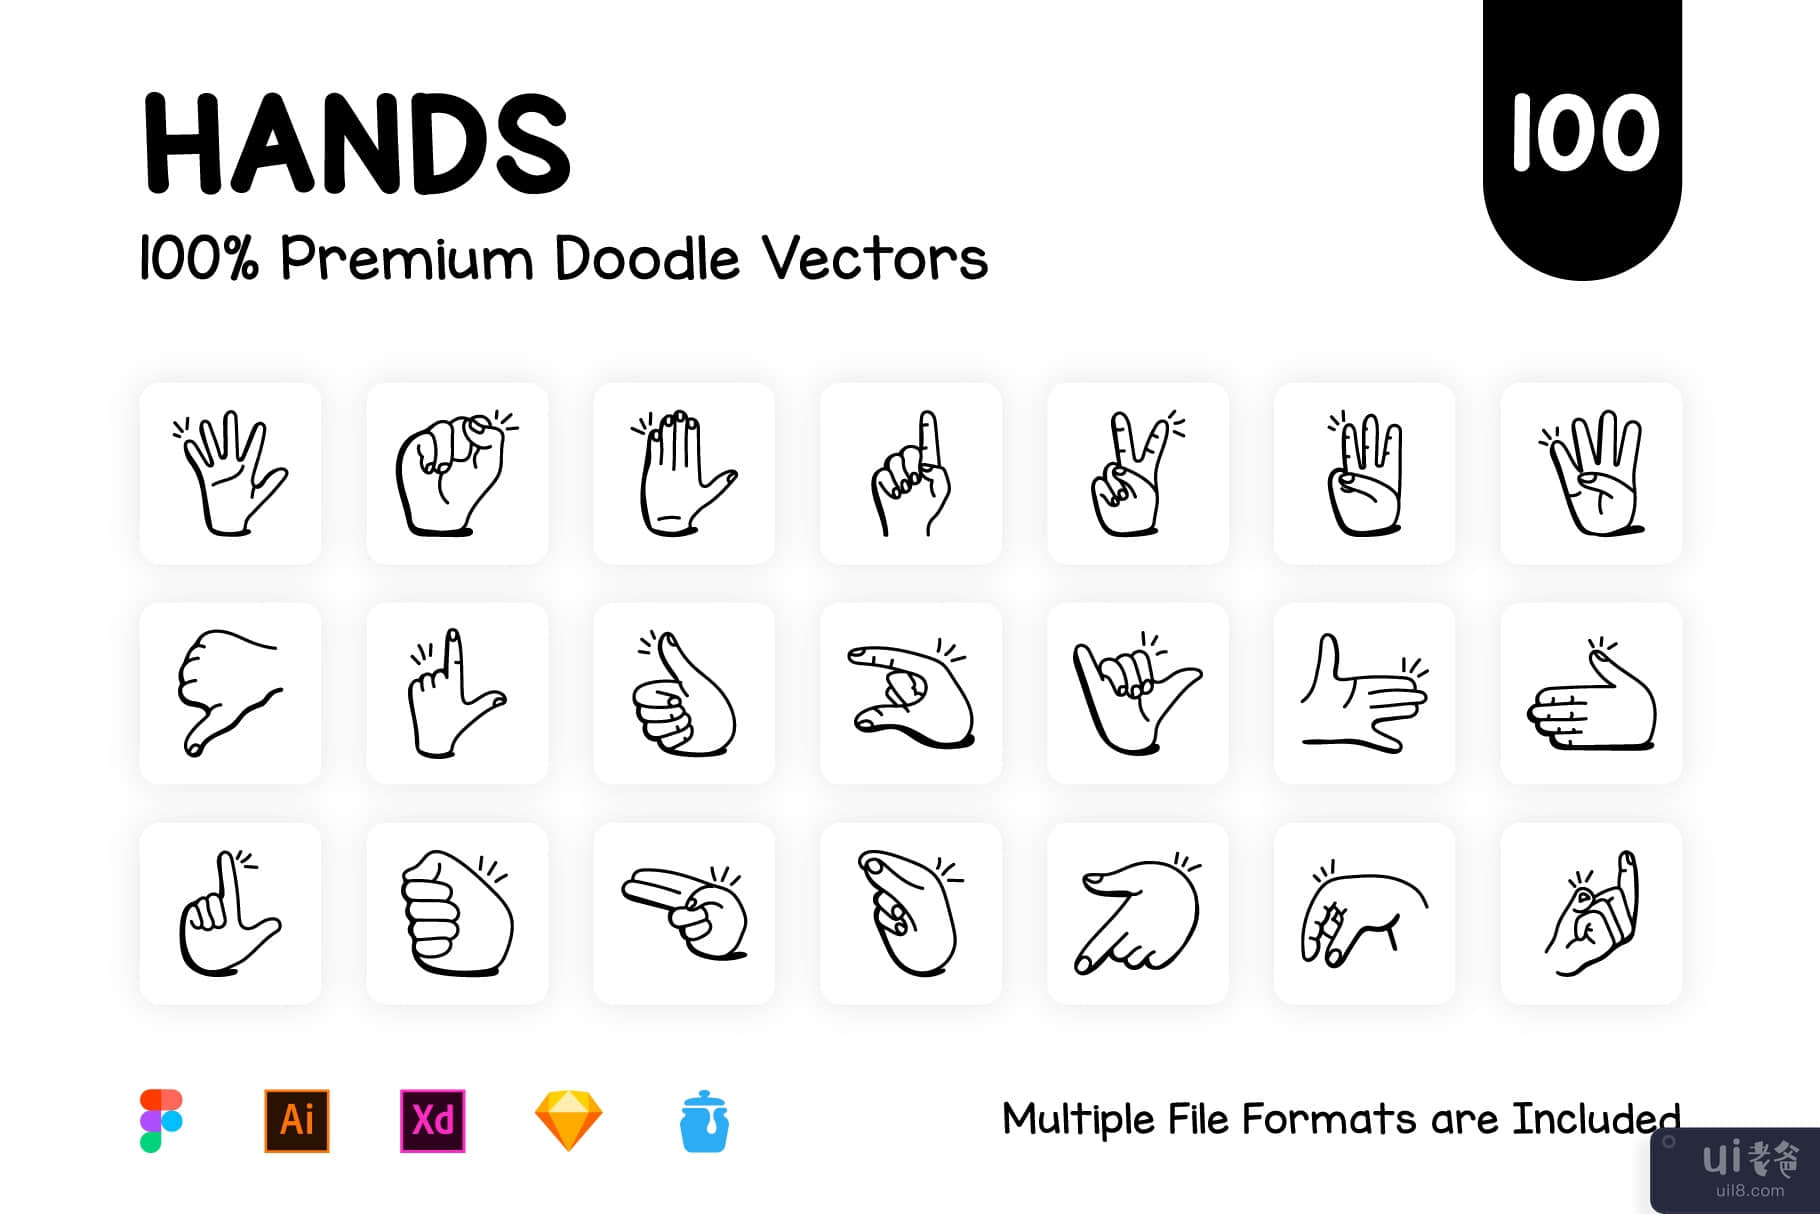 涂鸦手语图标的集合(Collection of Doodle Sign Language Icons)插图6